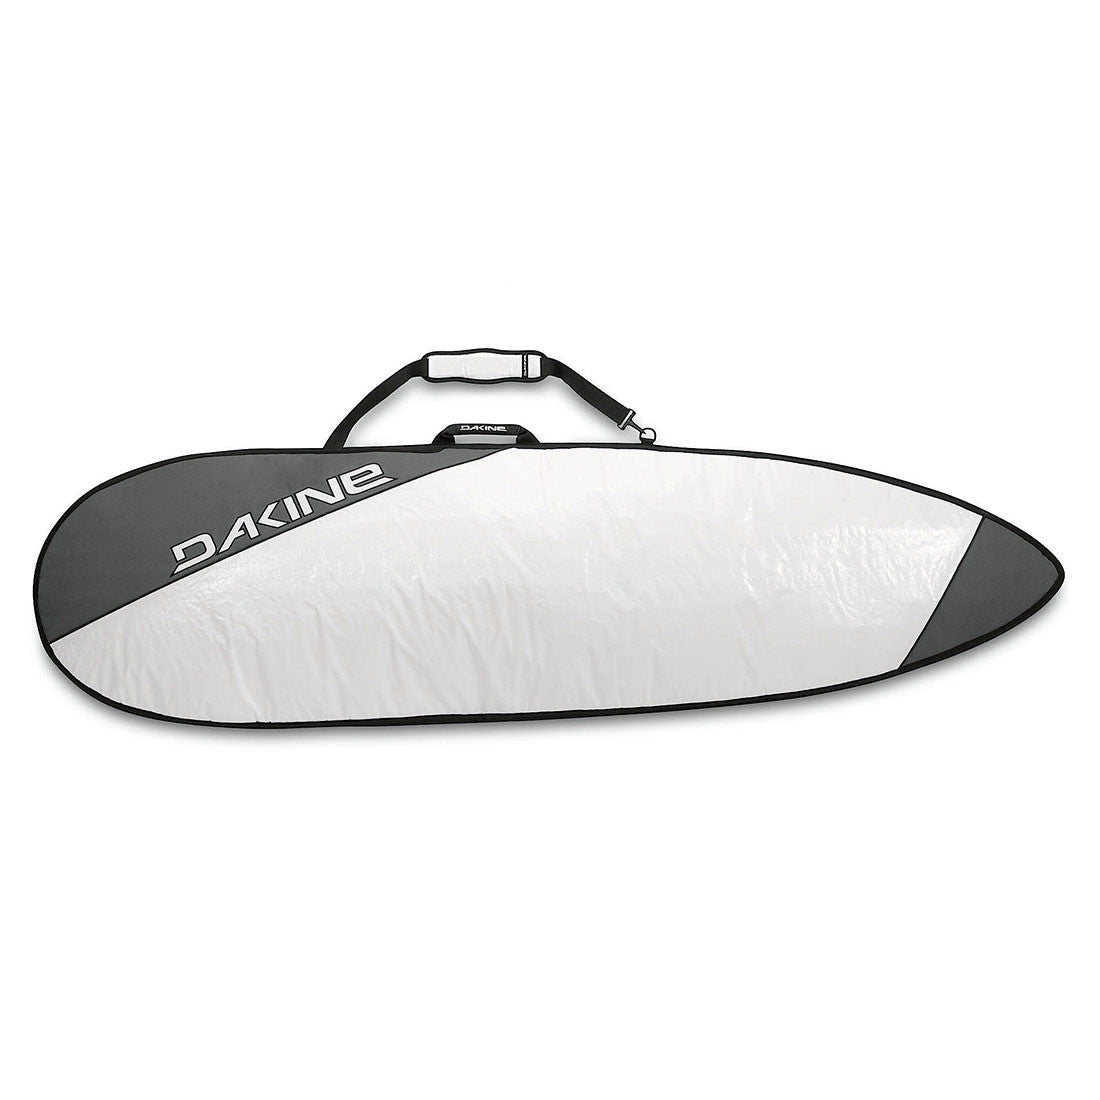 Dakine 6'6" Daylite Surfboard Bag (Thruster)